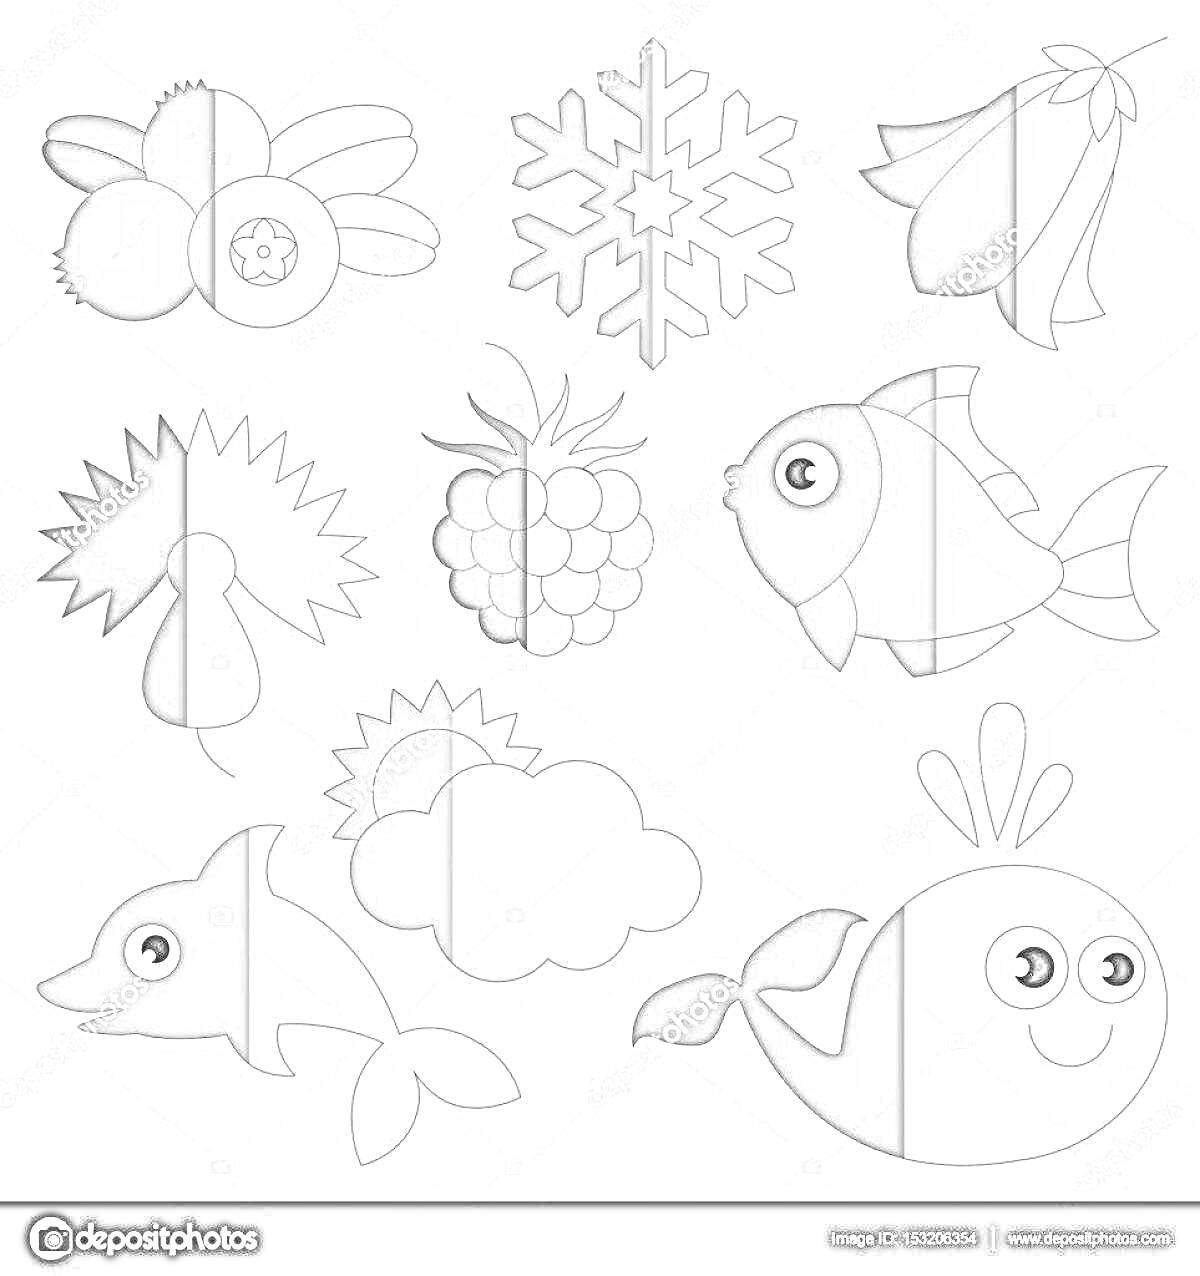 Раскраска Рыба, цветок, снежинка, бабочка, ягода, рыба, ягода, облако, дельфин, кит